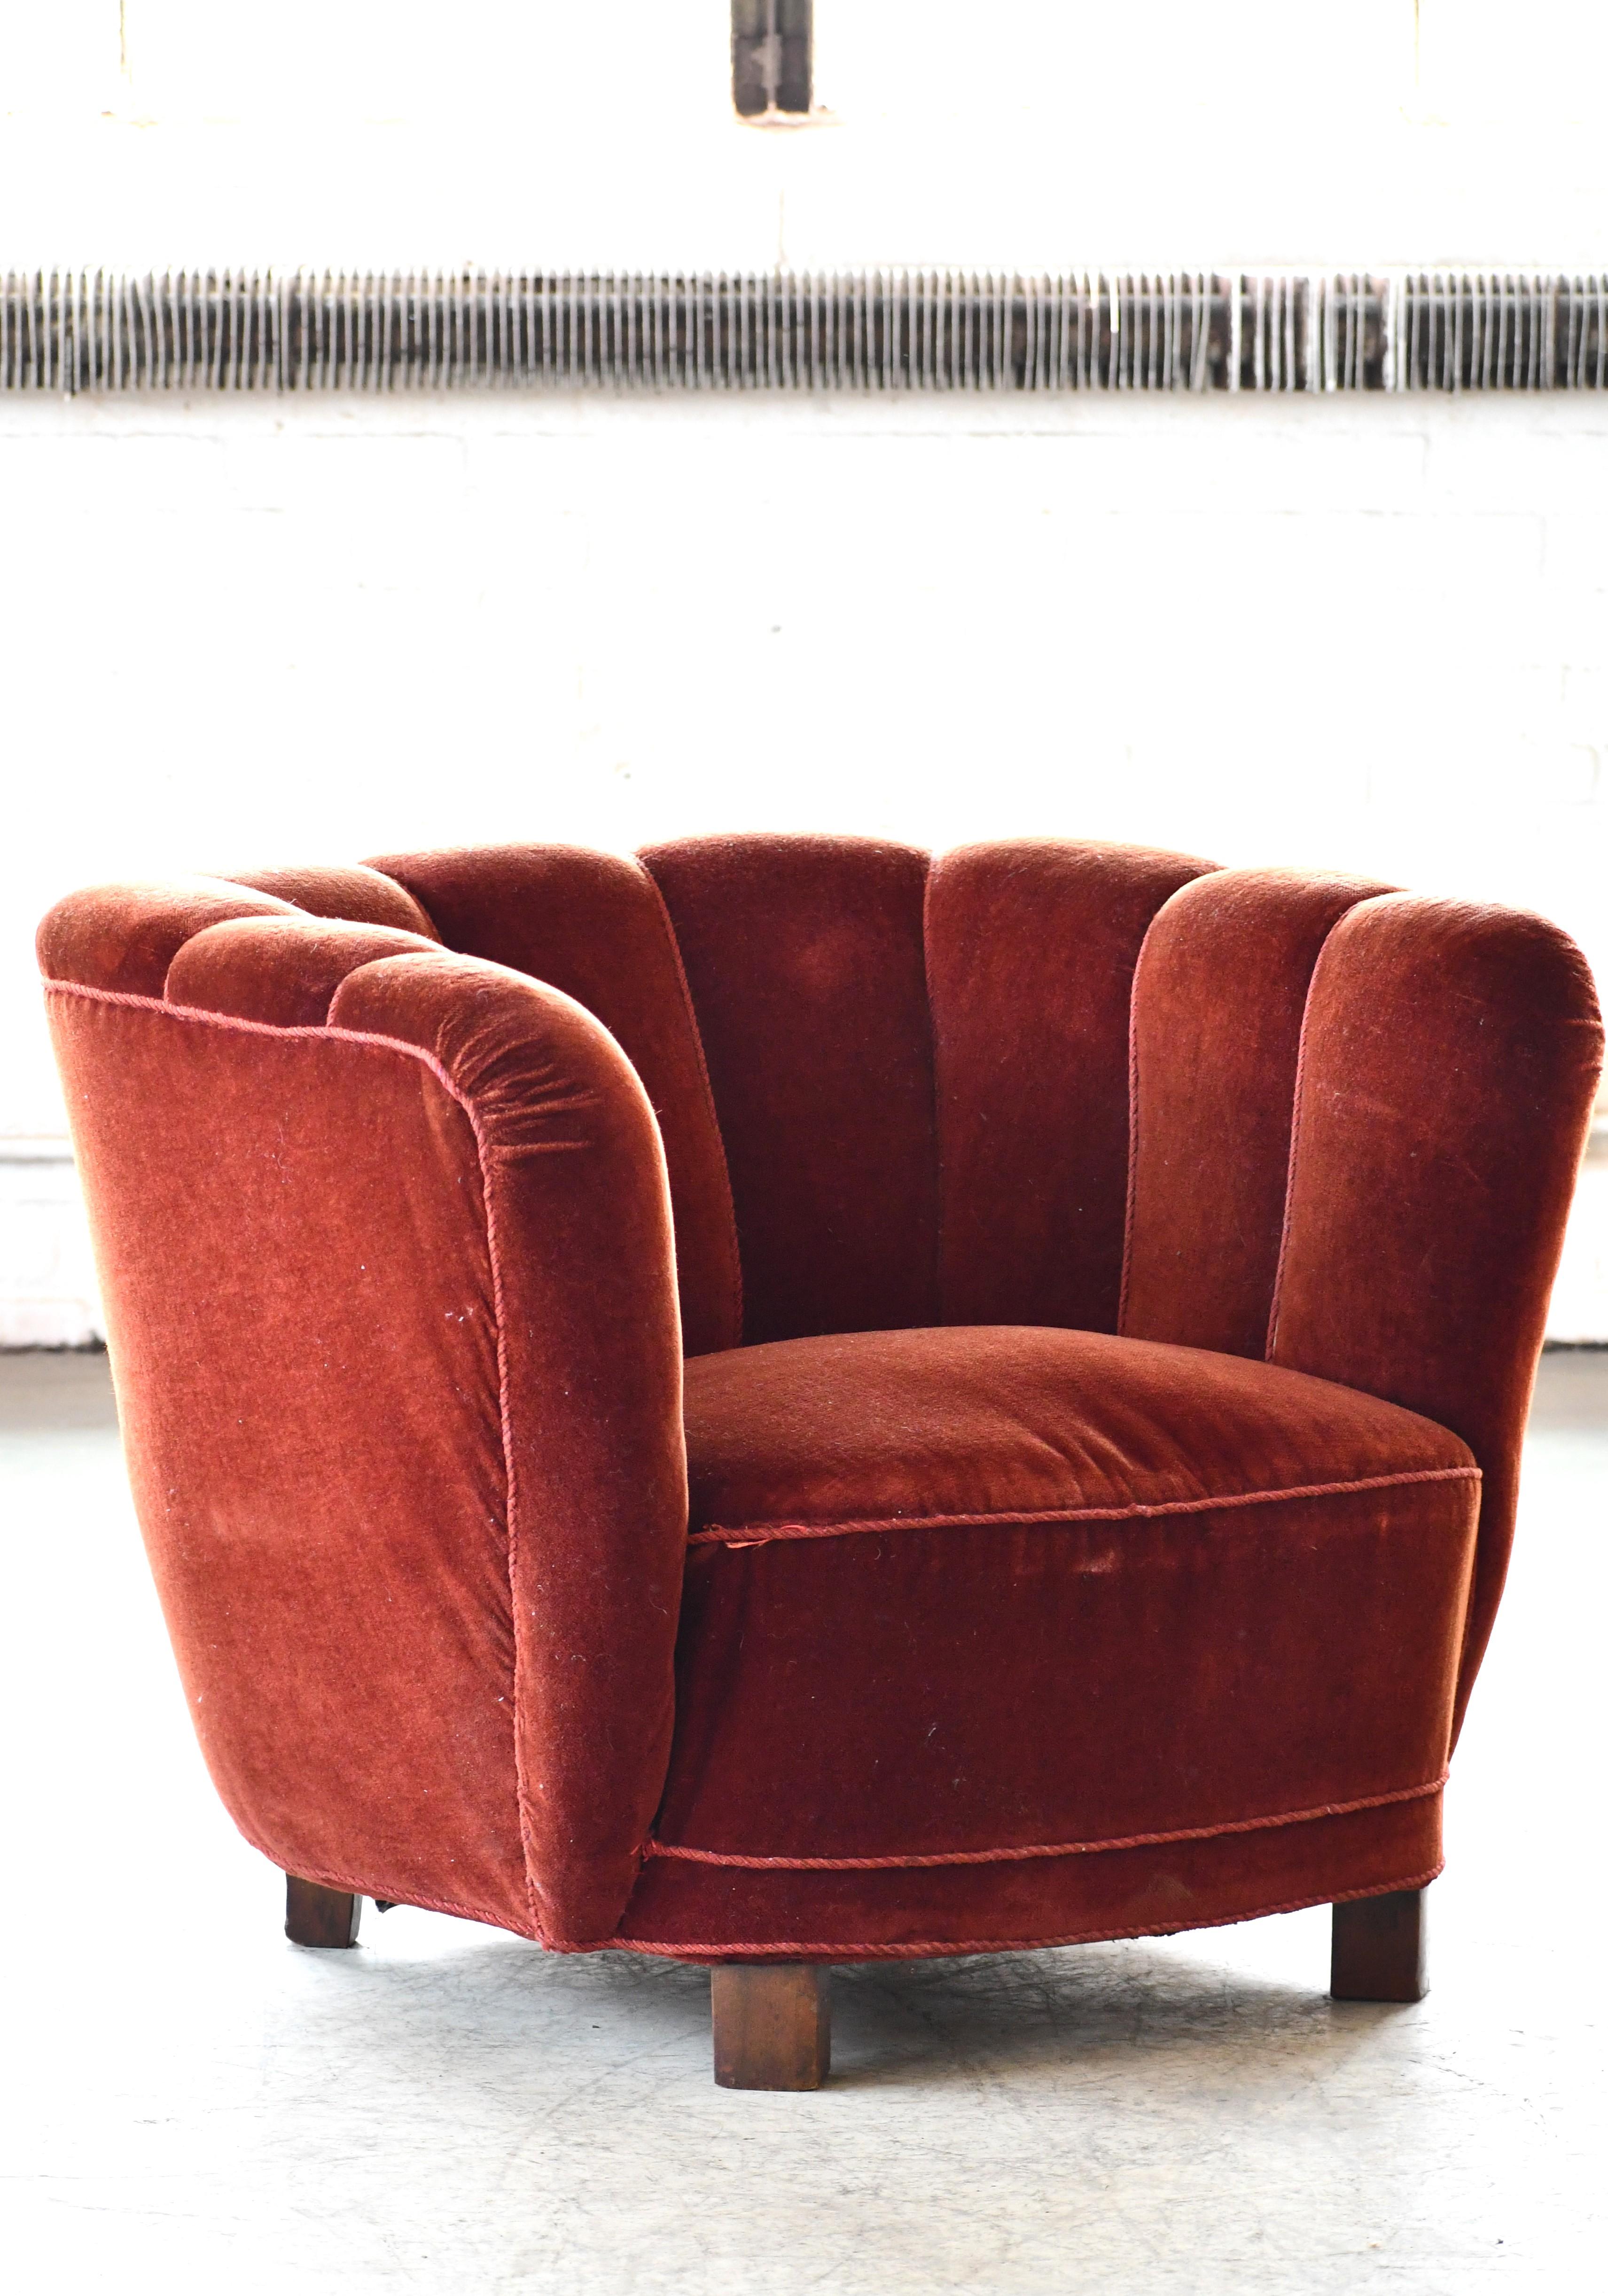 Ce superbe fauteuil club danois incurvé des années 1940 correspond en fait aux canapés danois incurvés ou en forme de banane fabriqués dans les années 1930-1940. Les canapés et les chaises étaient très populaires dans les années 1930 et au début des